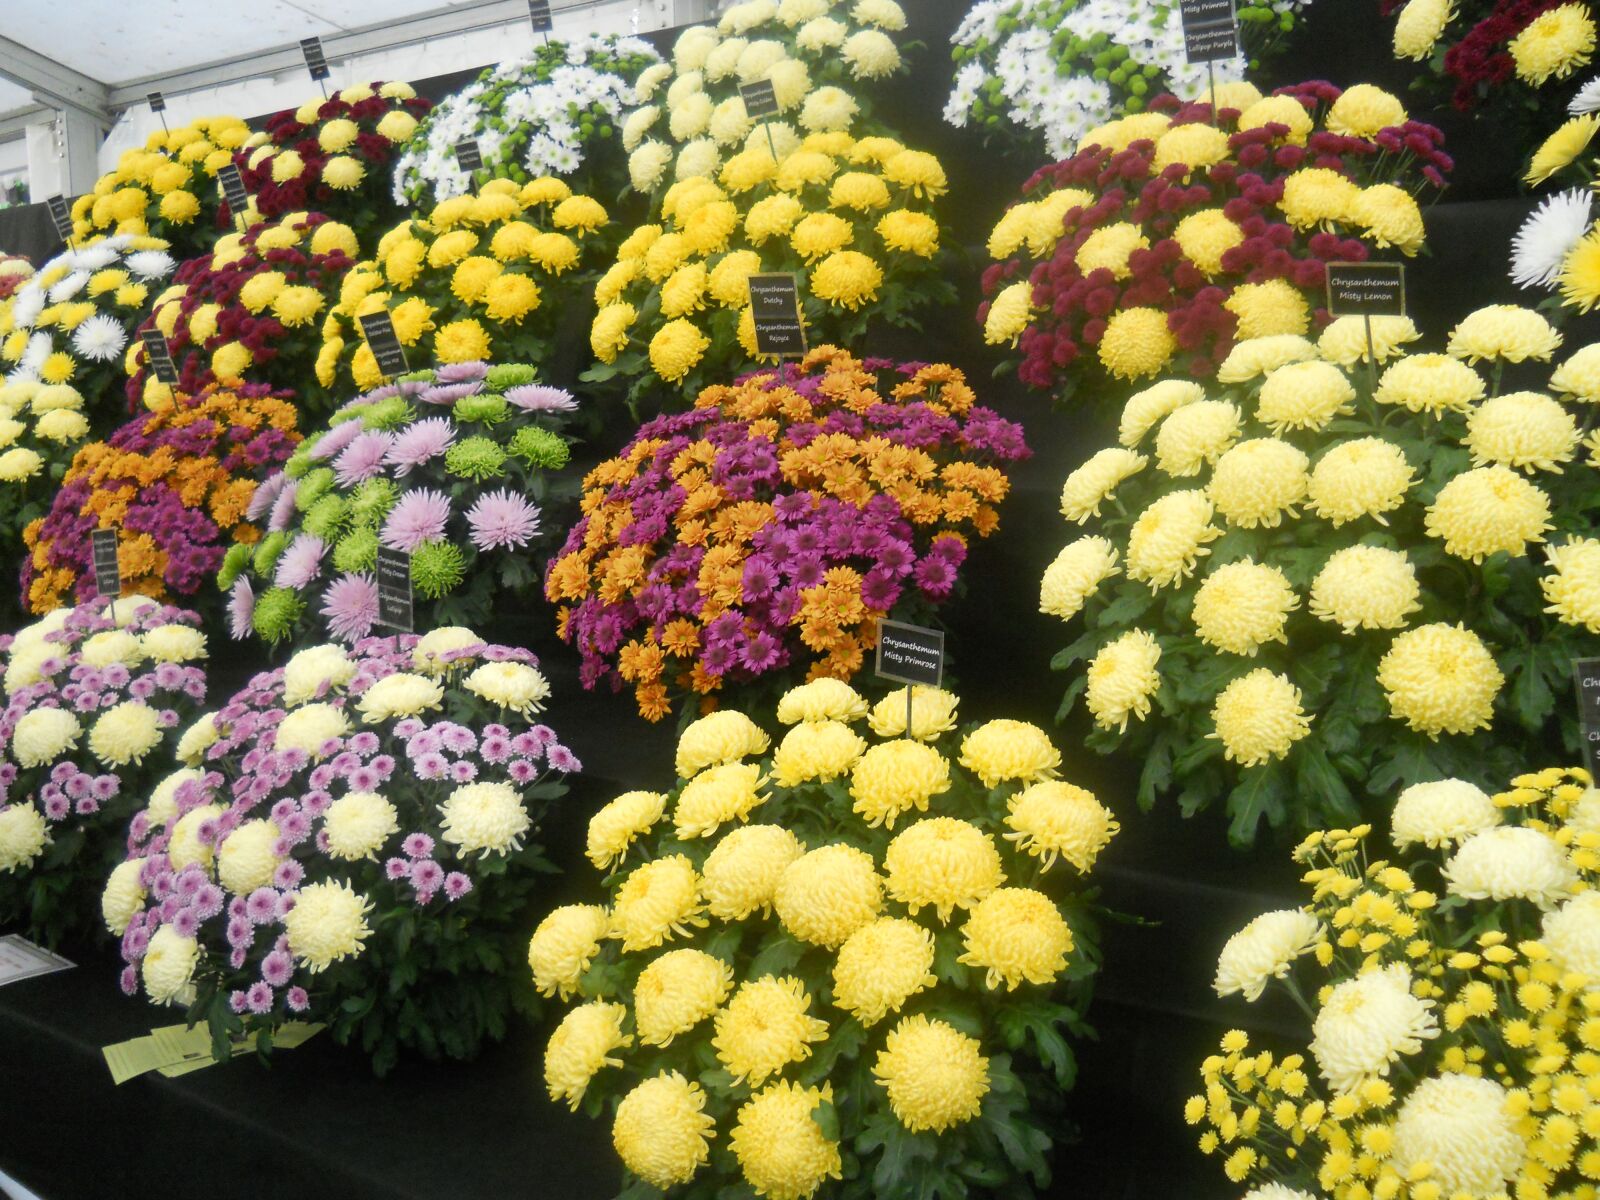 Nikon Coolpix L22 sample photo. Flowers, flower show, color photography